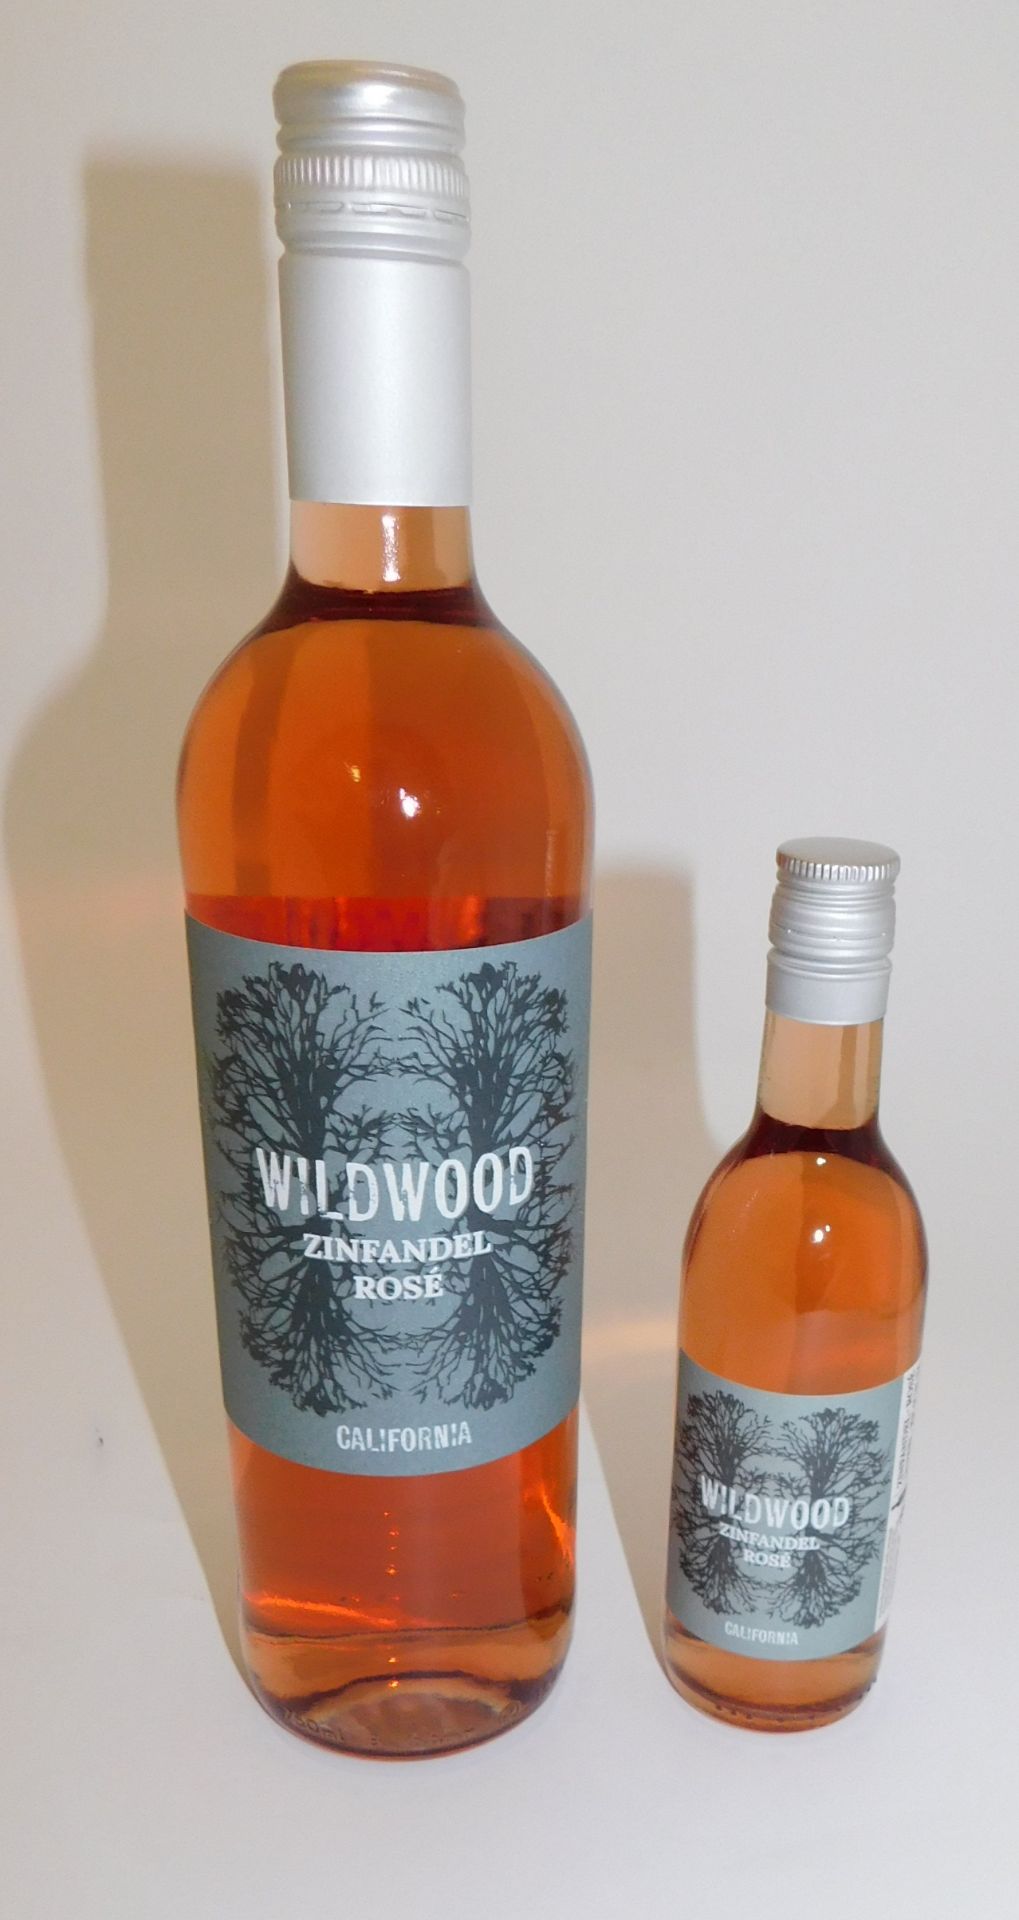 12 Bottles Wildwood Zinfandel Rose, 75cl and 48 Bottles Wildwood Zinfandel Rose, 187ml (Located